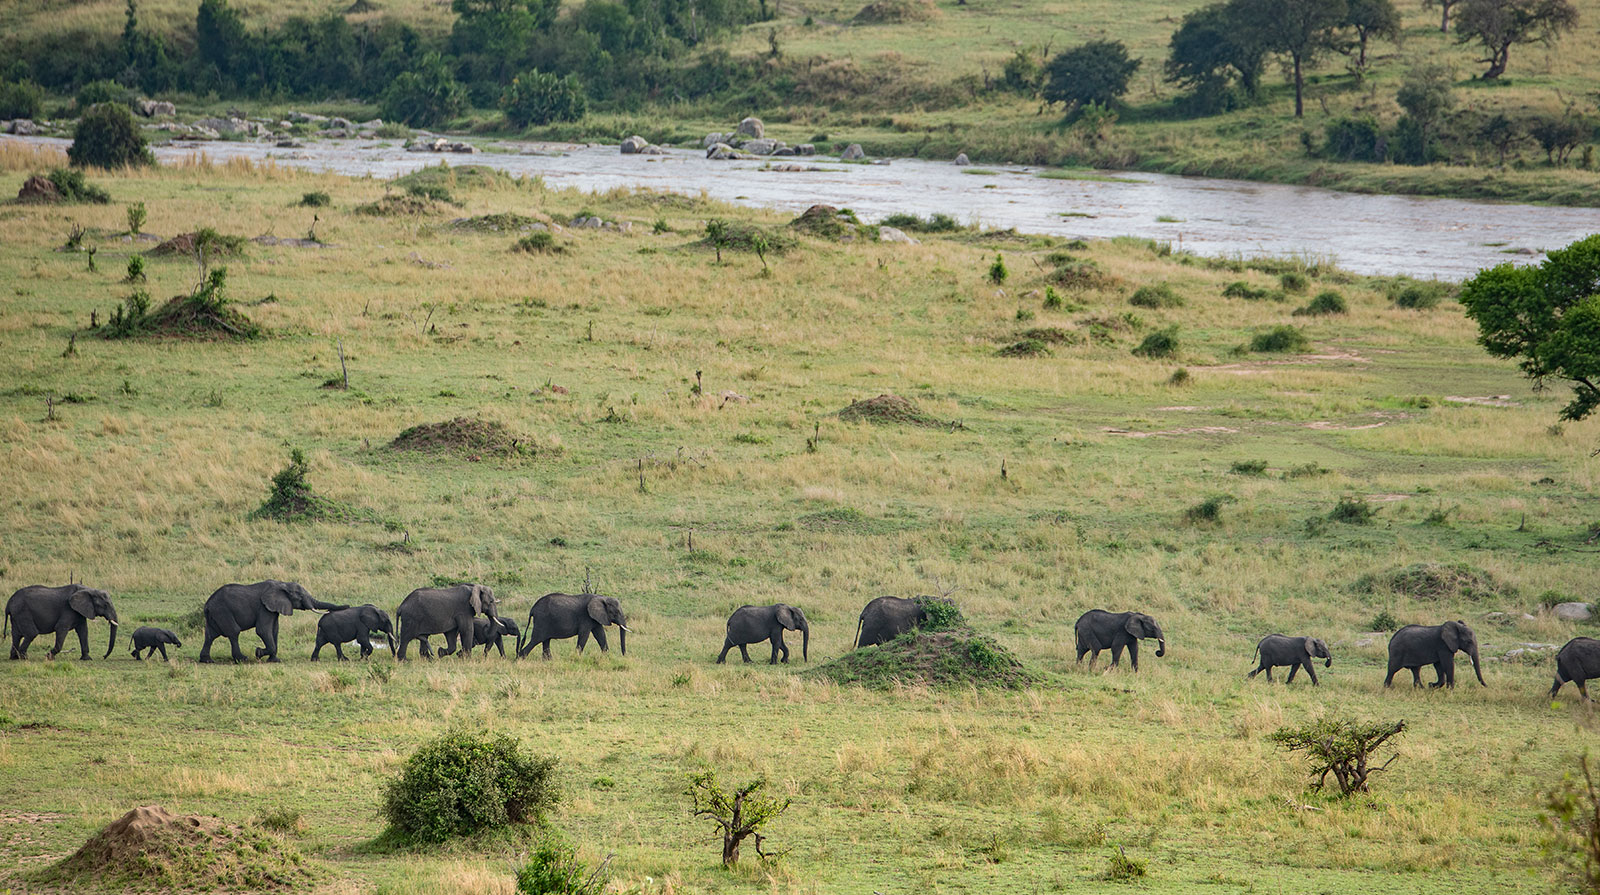 Mara River Post - Densité animalière exceptionnelle